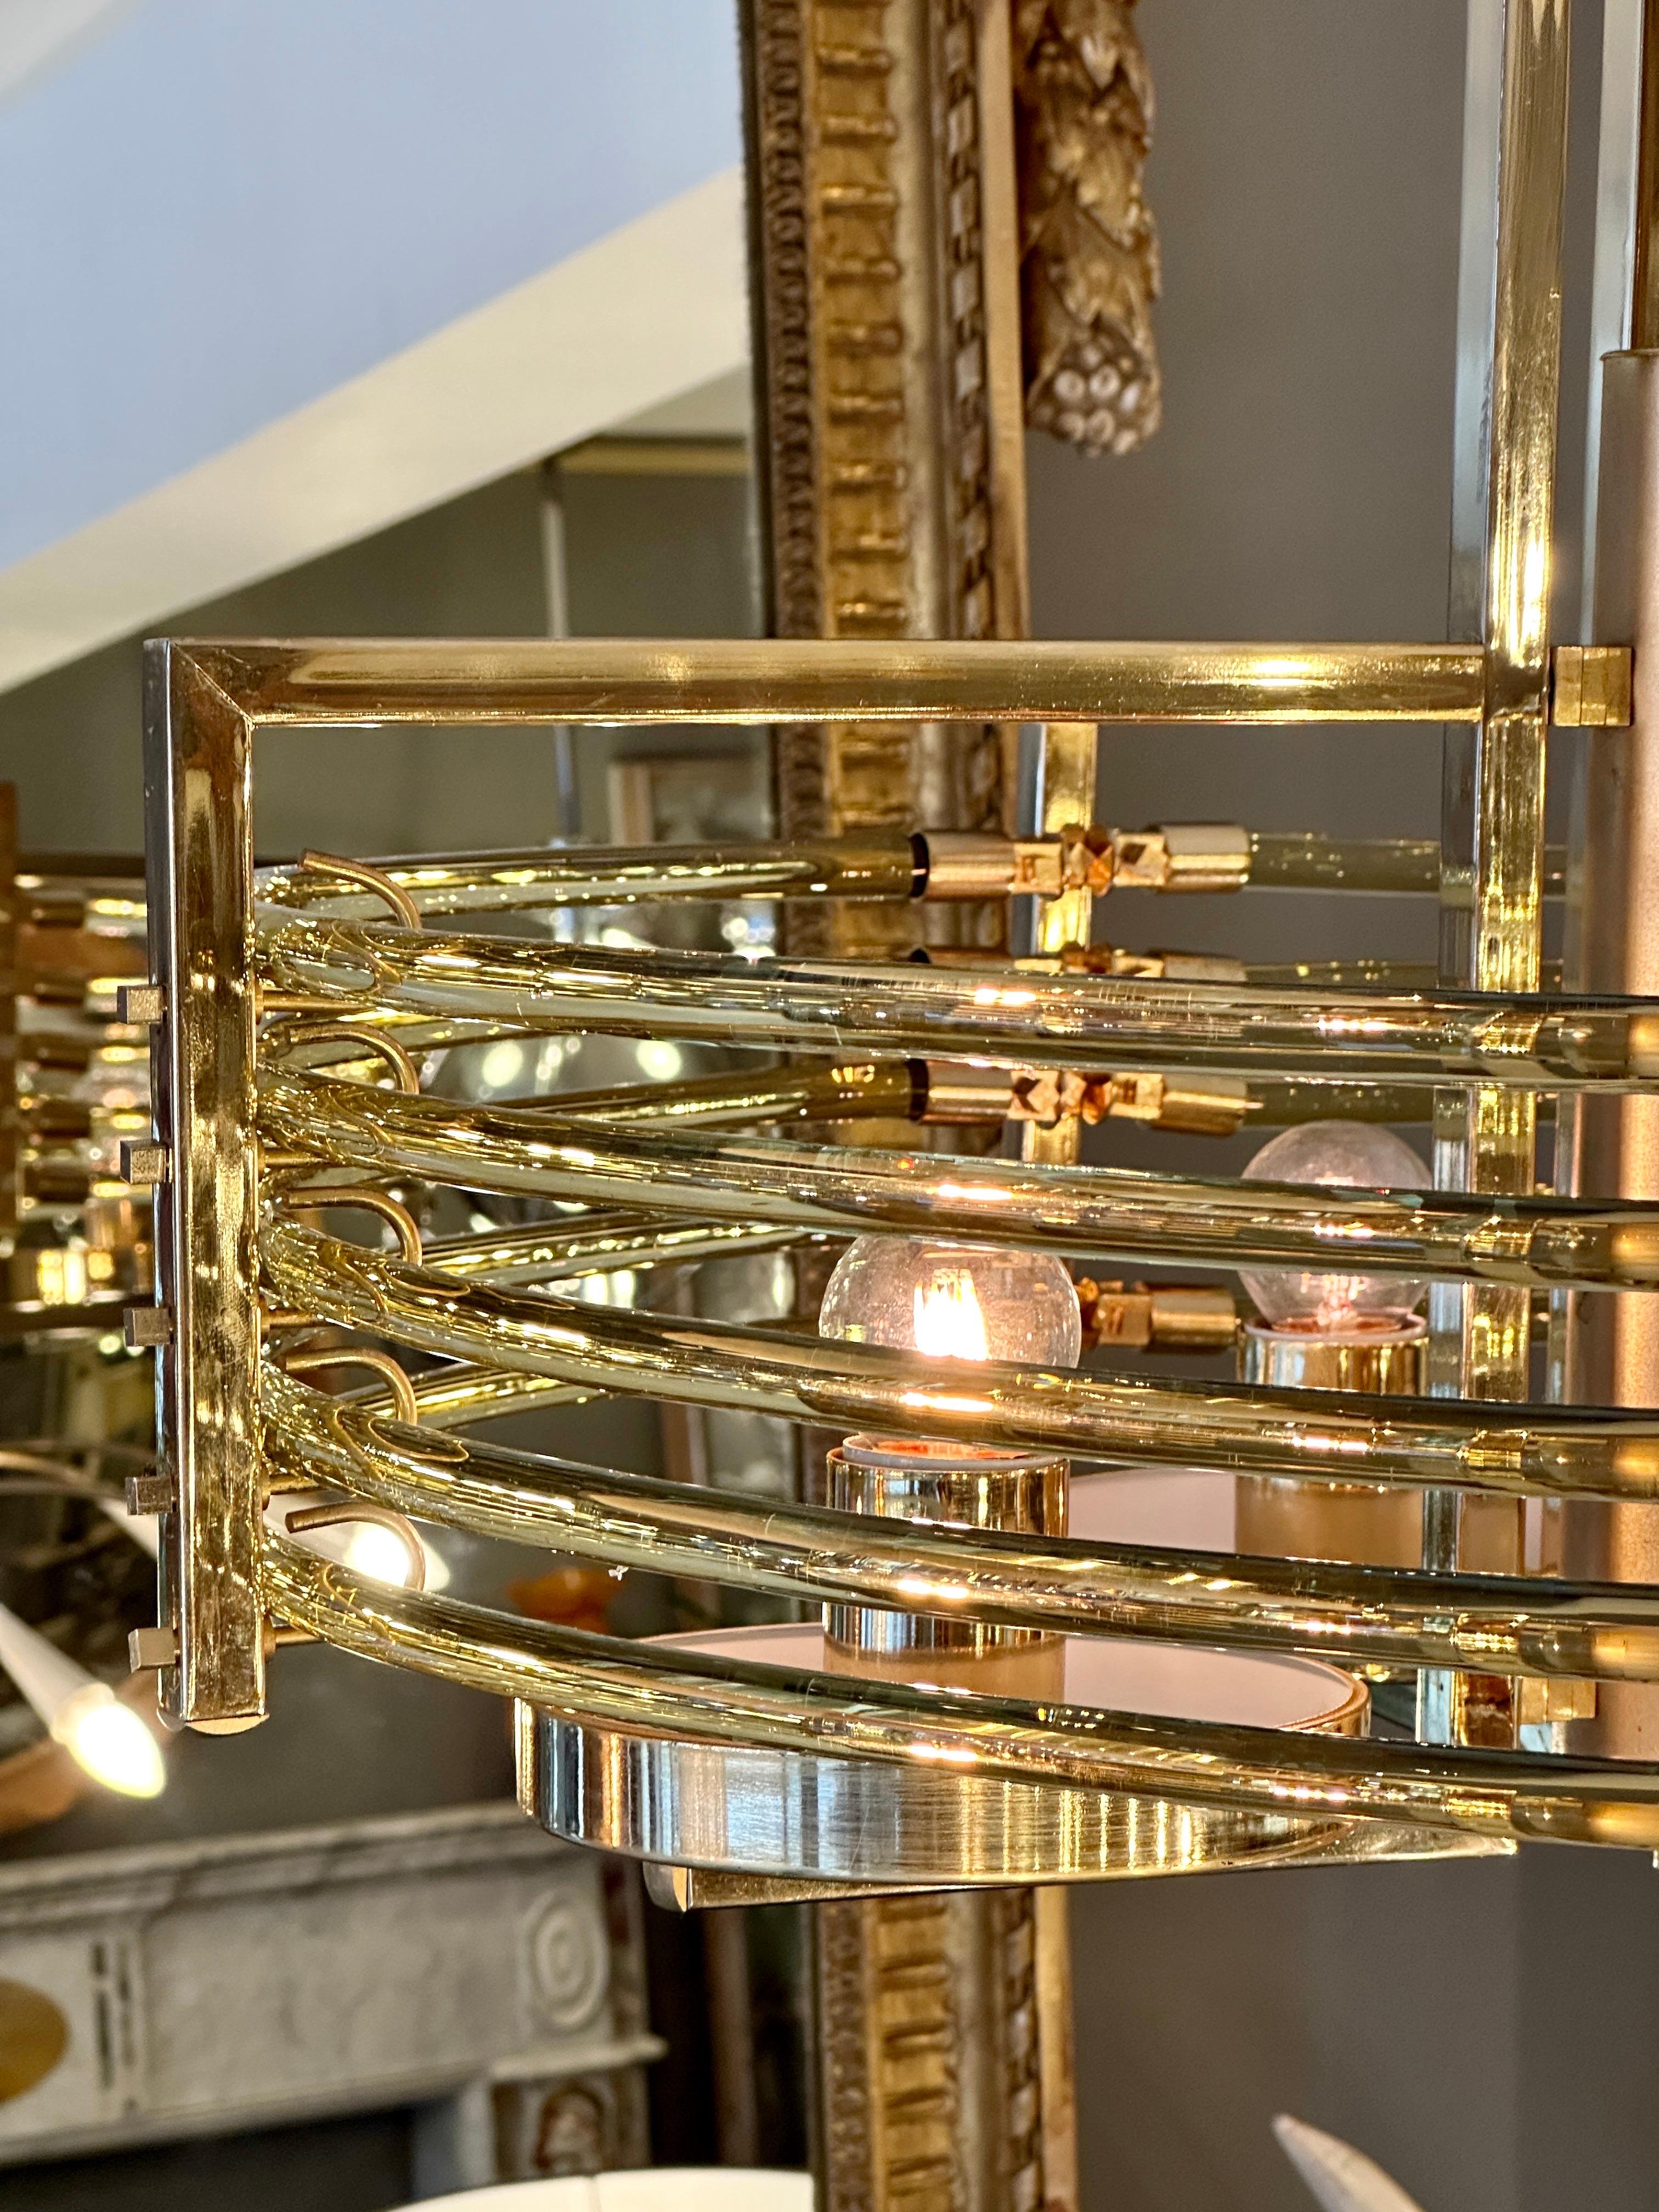  Un modèle rare de Gaetano Sciolari en plaque d'or et diffuseurs tubulaires en verre de Murano ambre/or. Pièces de très bonne qualité datant du milieu du siècle, typiques du design moderniste de Sciolaris. Avec des tubes circulaires en verre de